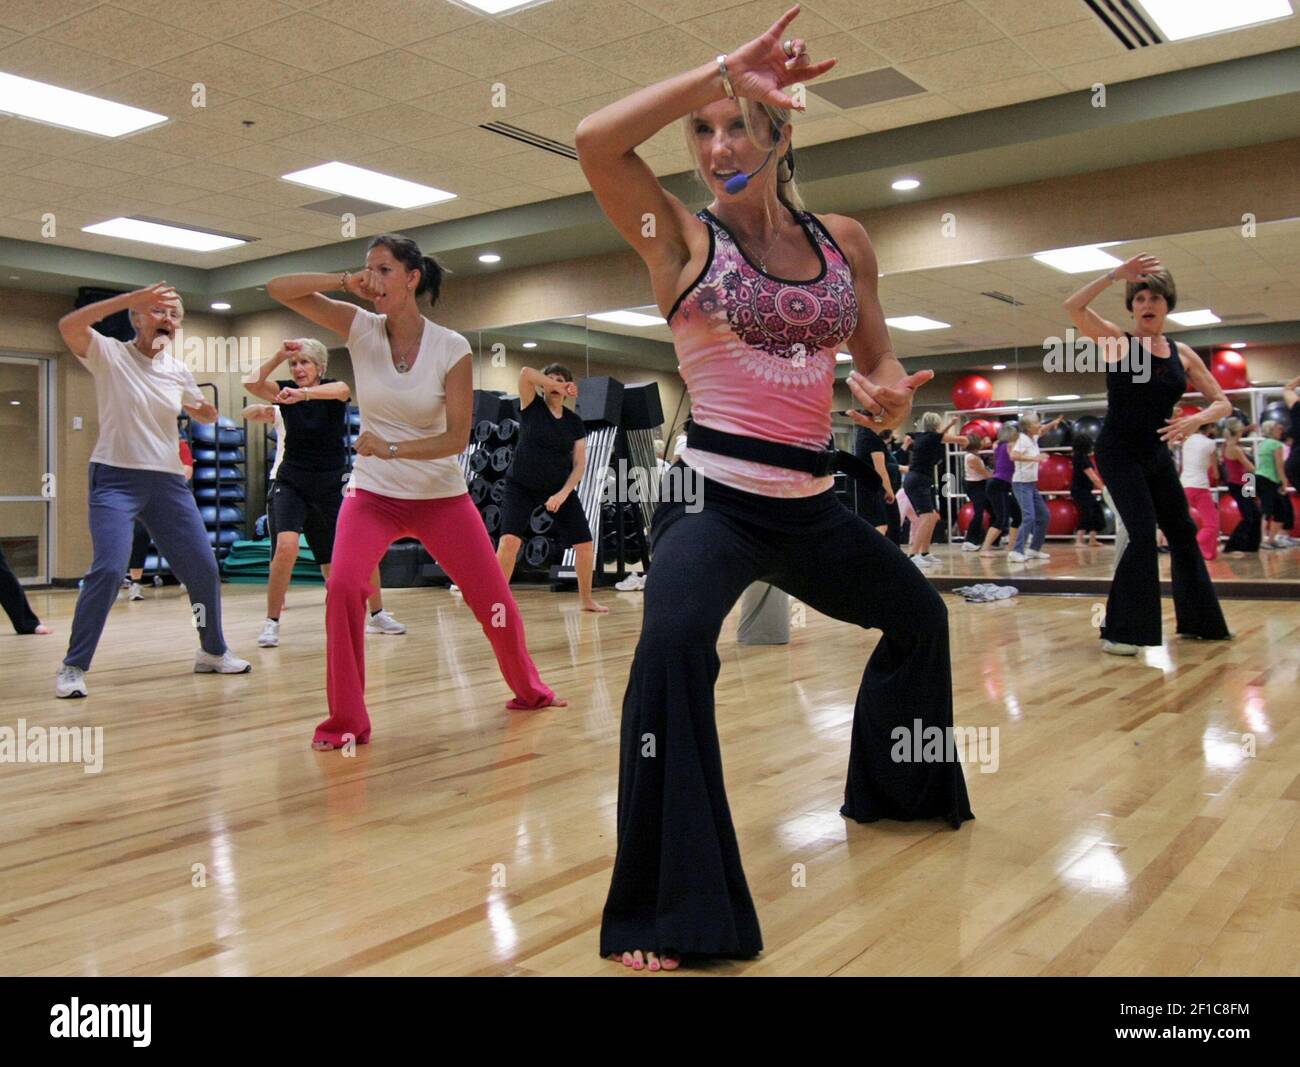 La instructora Marie McKay, en primer plano, dirige una clase de 'NIA' en Lifetime Fitness, una técnica que combina artes marciales, danza y artes curativas, el 8 de julio de 2009, en Eden Prairie, Minnesota. (Foto de Tom Sweeney/Minneapolis Star Tribune/MCT/Sipa USA) Foto de stock